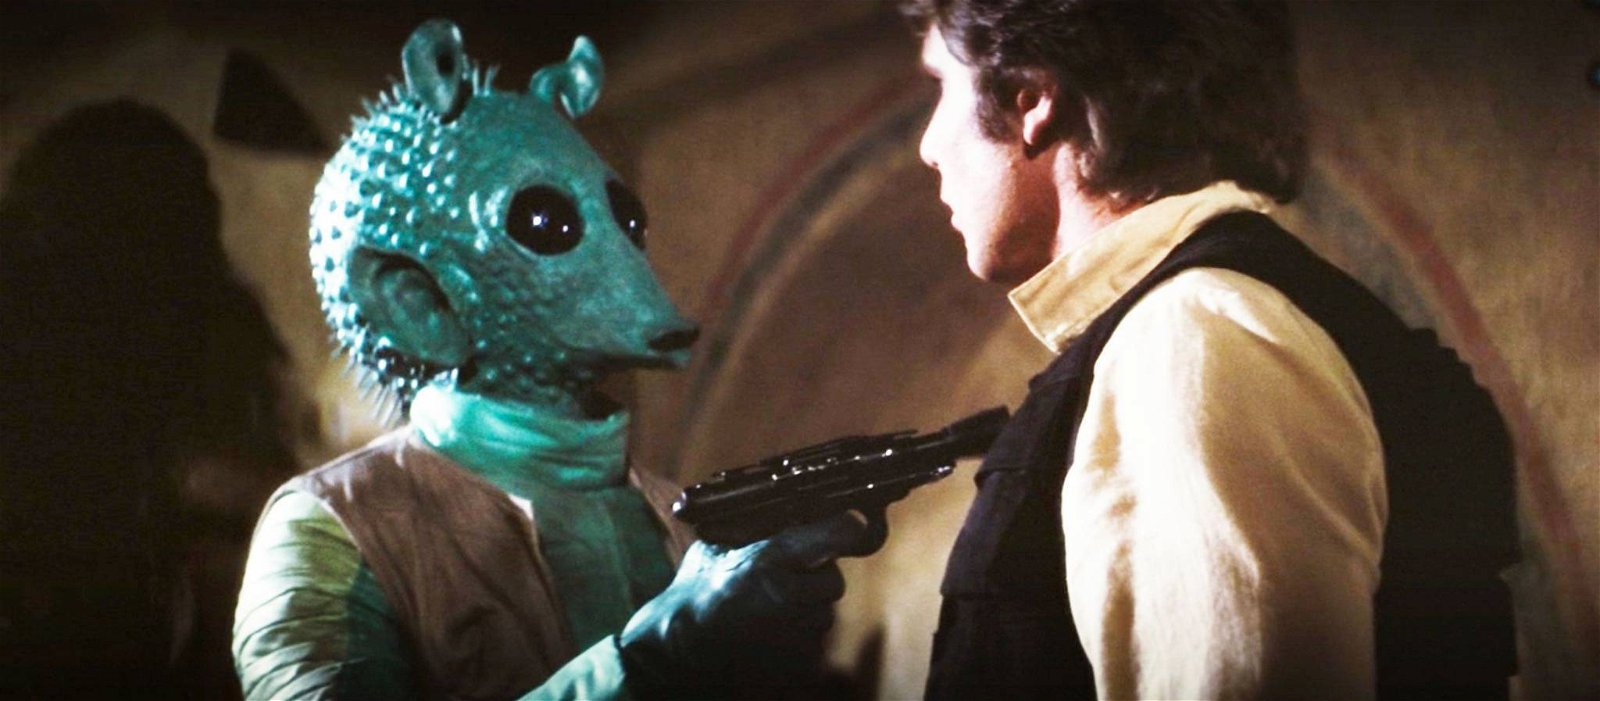 Immagine di Star Wars: Disney+ ha modificato nuovamente la scena di Han Solo e Greedo